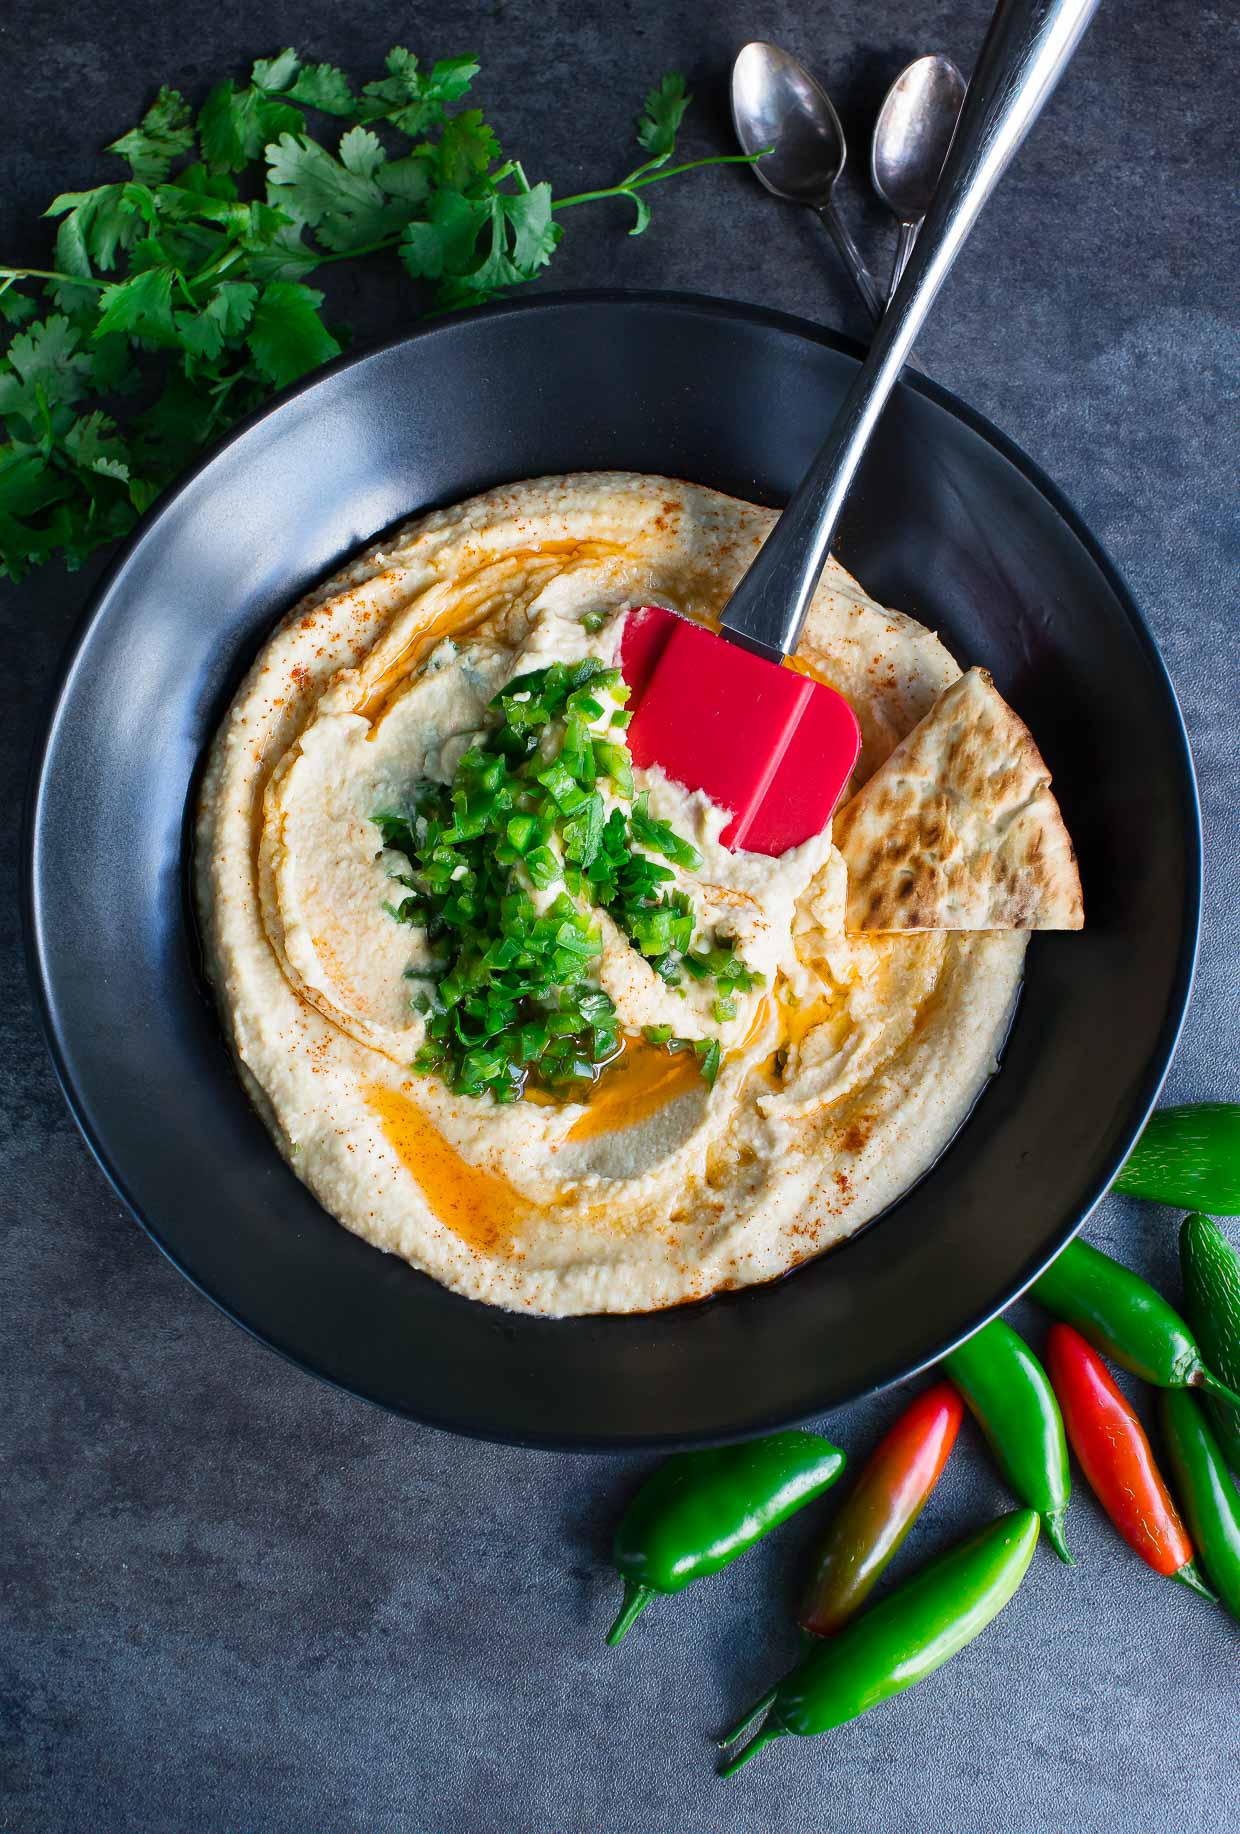 Spicy Hummus Dip Recipe